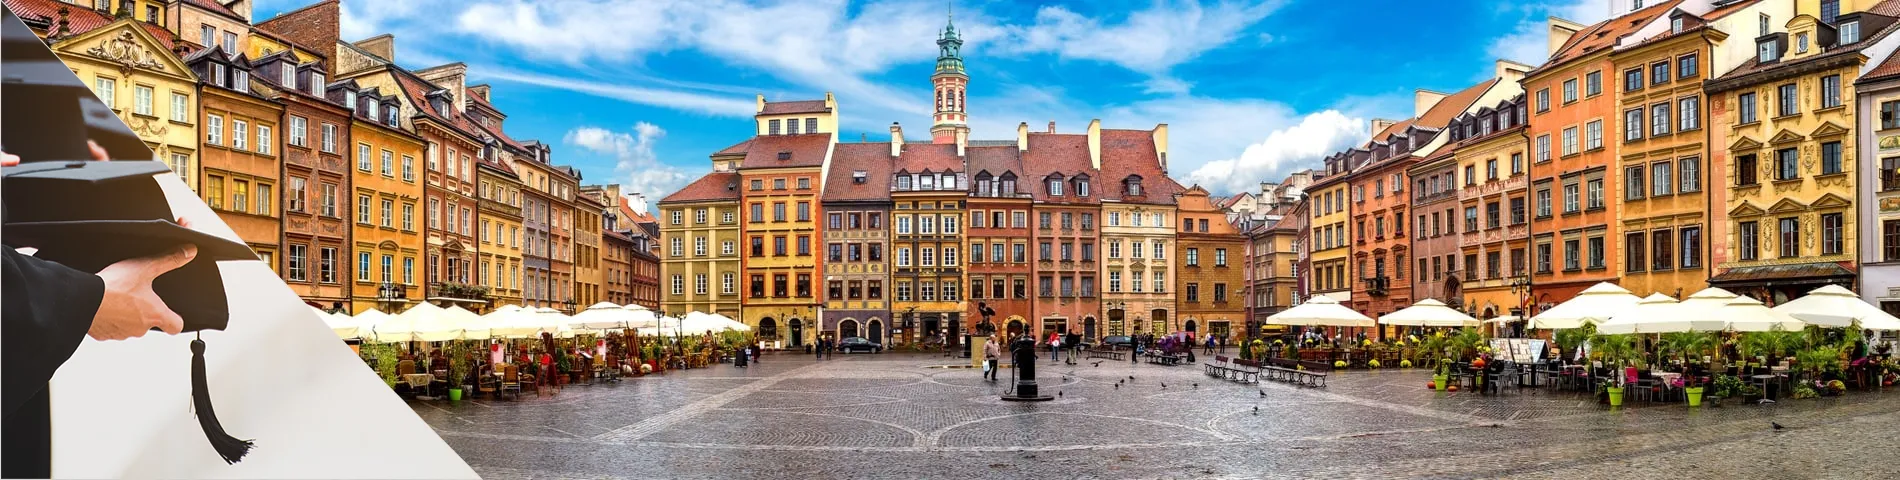 Varsòvia - Cursos universitaris